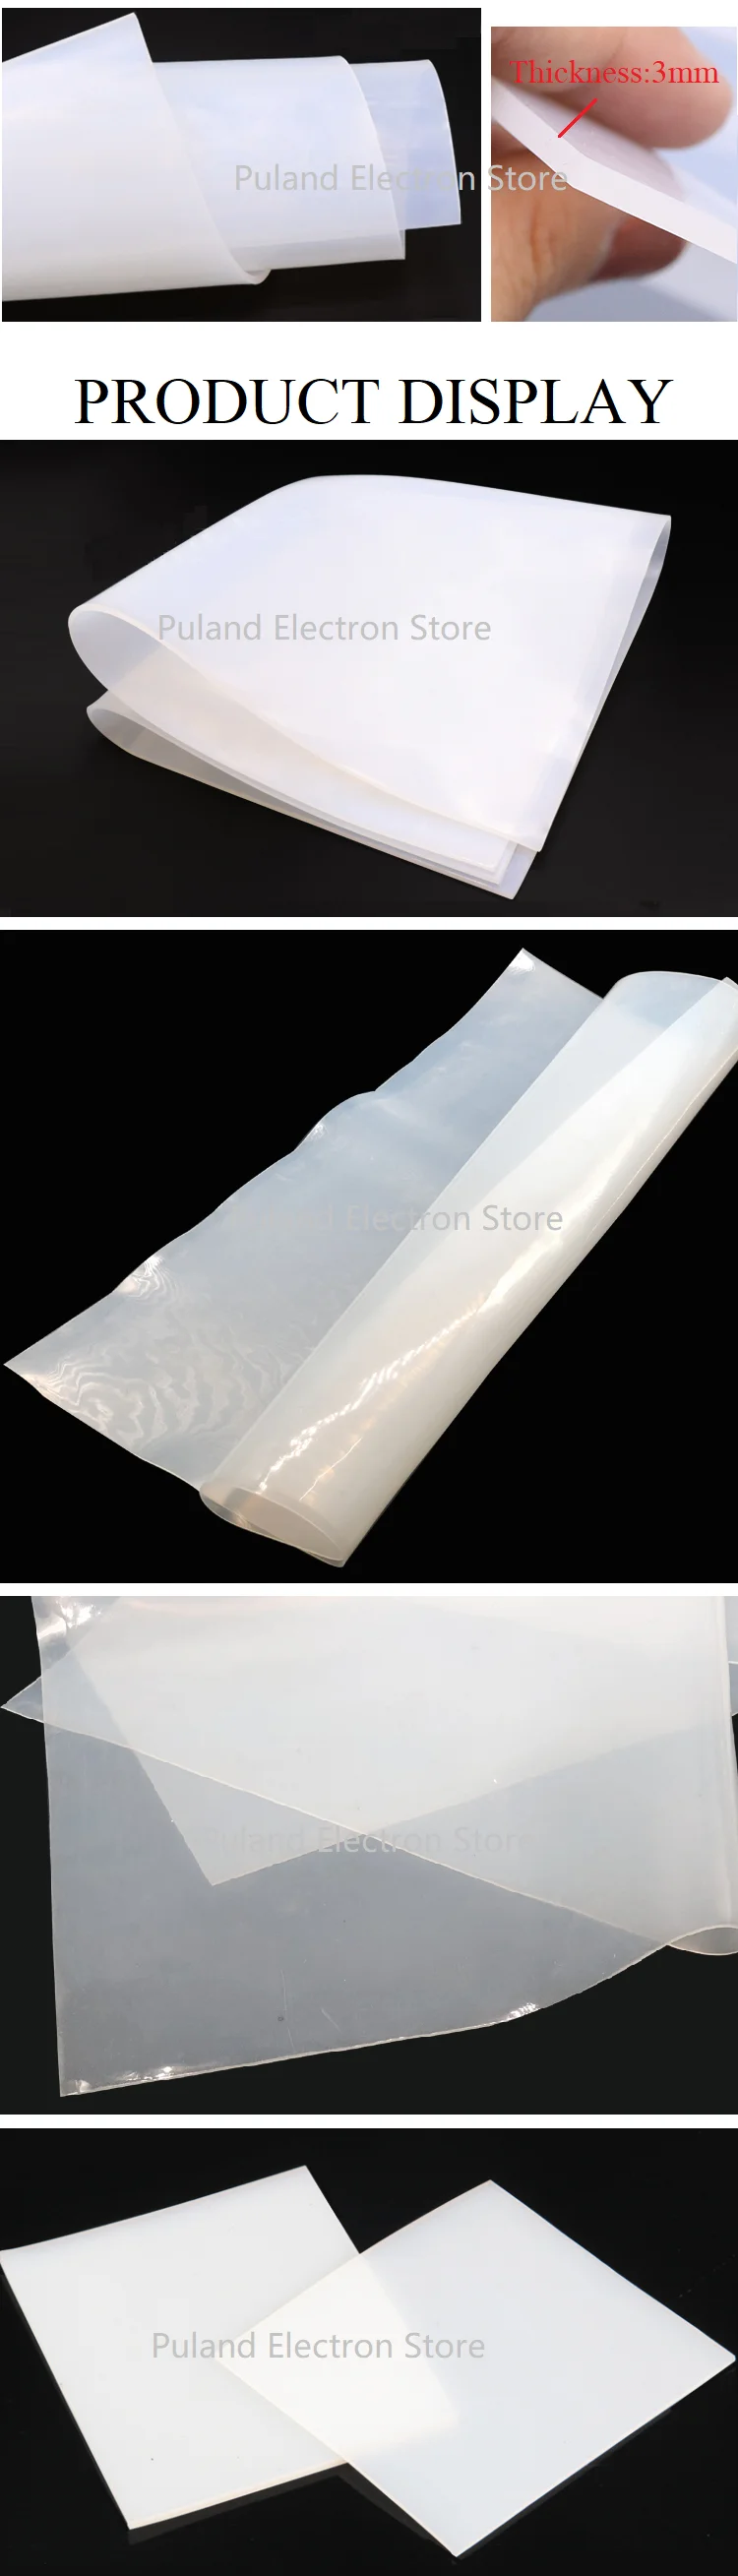 Размер 4, 5, 6, 8, 10 мм, лист силиконовой резины 500 мм x 500 мм, ширина, уплотнительная пленка для подушки, квадратная плоская прокладка, устойчивая к нагреву, молочно-белая